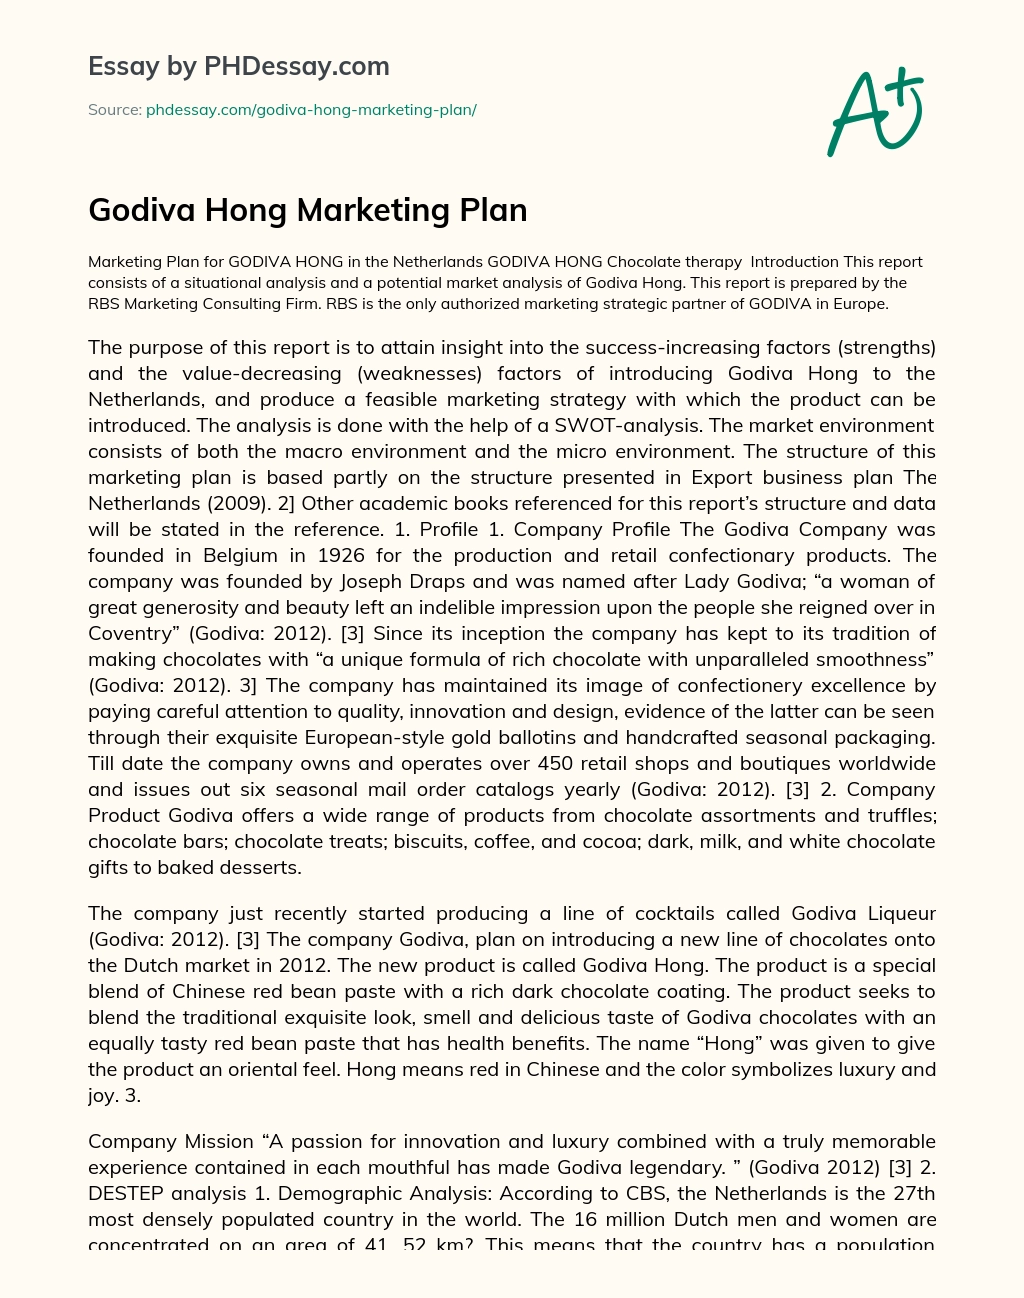 Godiva Hong Marketing Plan essay